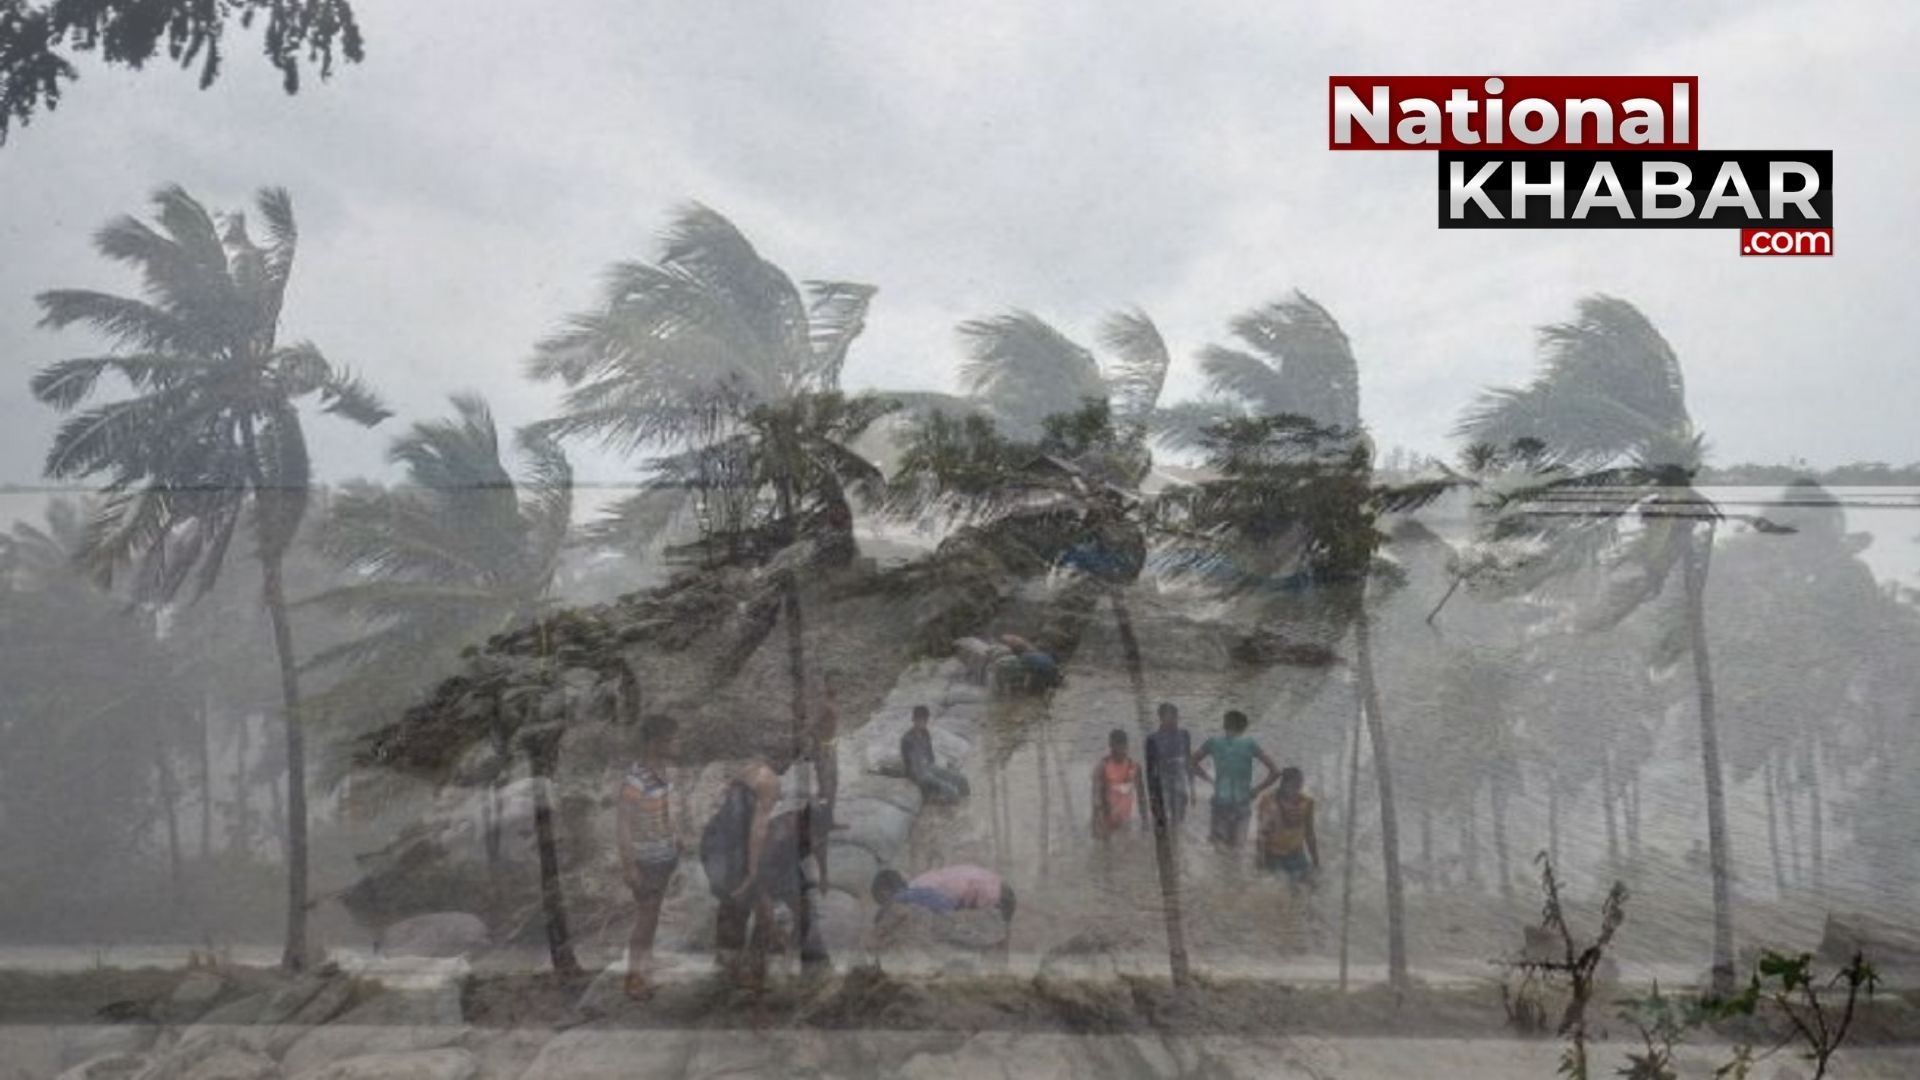 Cyclone Yaas News: ताउते के बाद अब Cyclone 'Yaas' की चेतावनी, अगले हफ्ते दे सकता है दस्तक